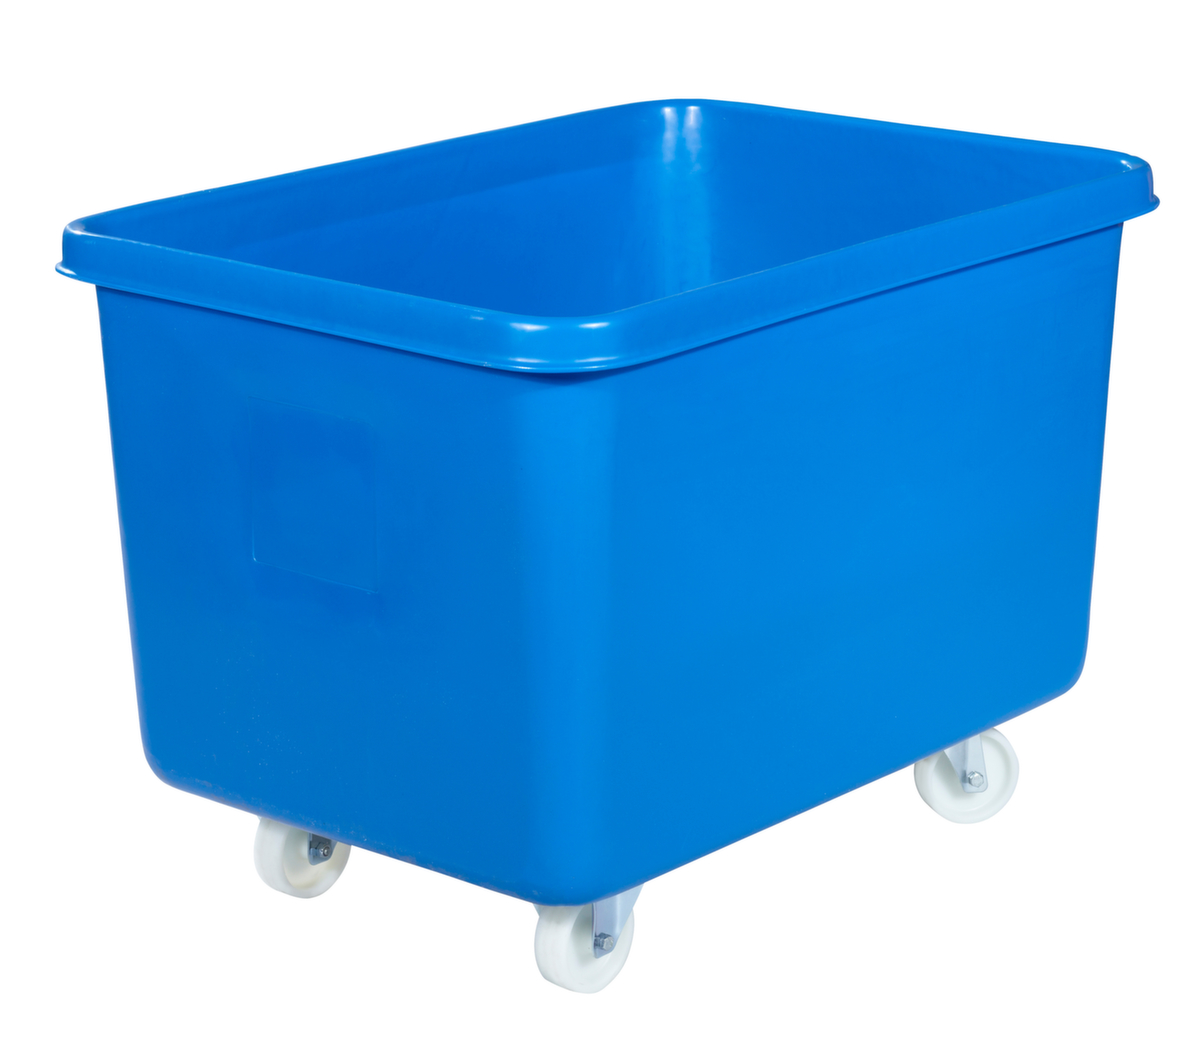 Mobiele rechthoekige container voedselveilig + versterkte basis, inhoud 340 l, blauw  ZOOM